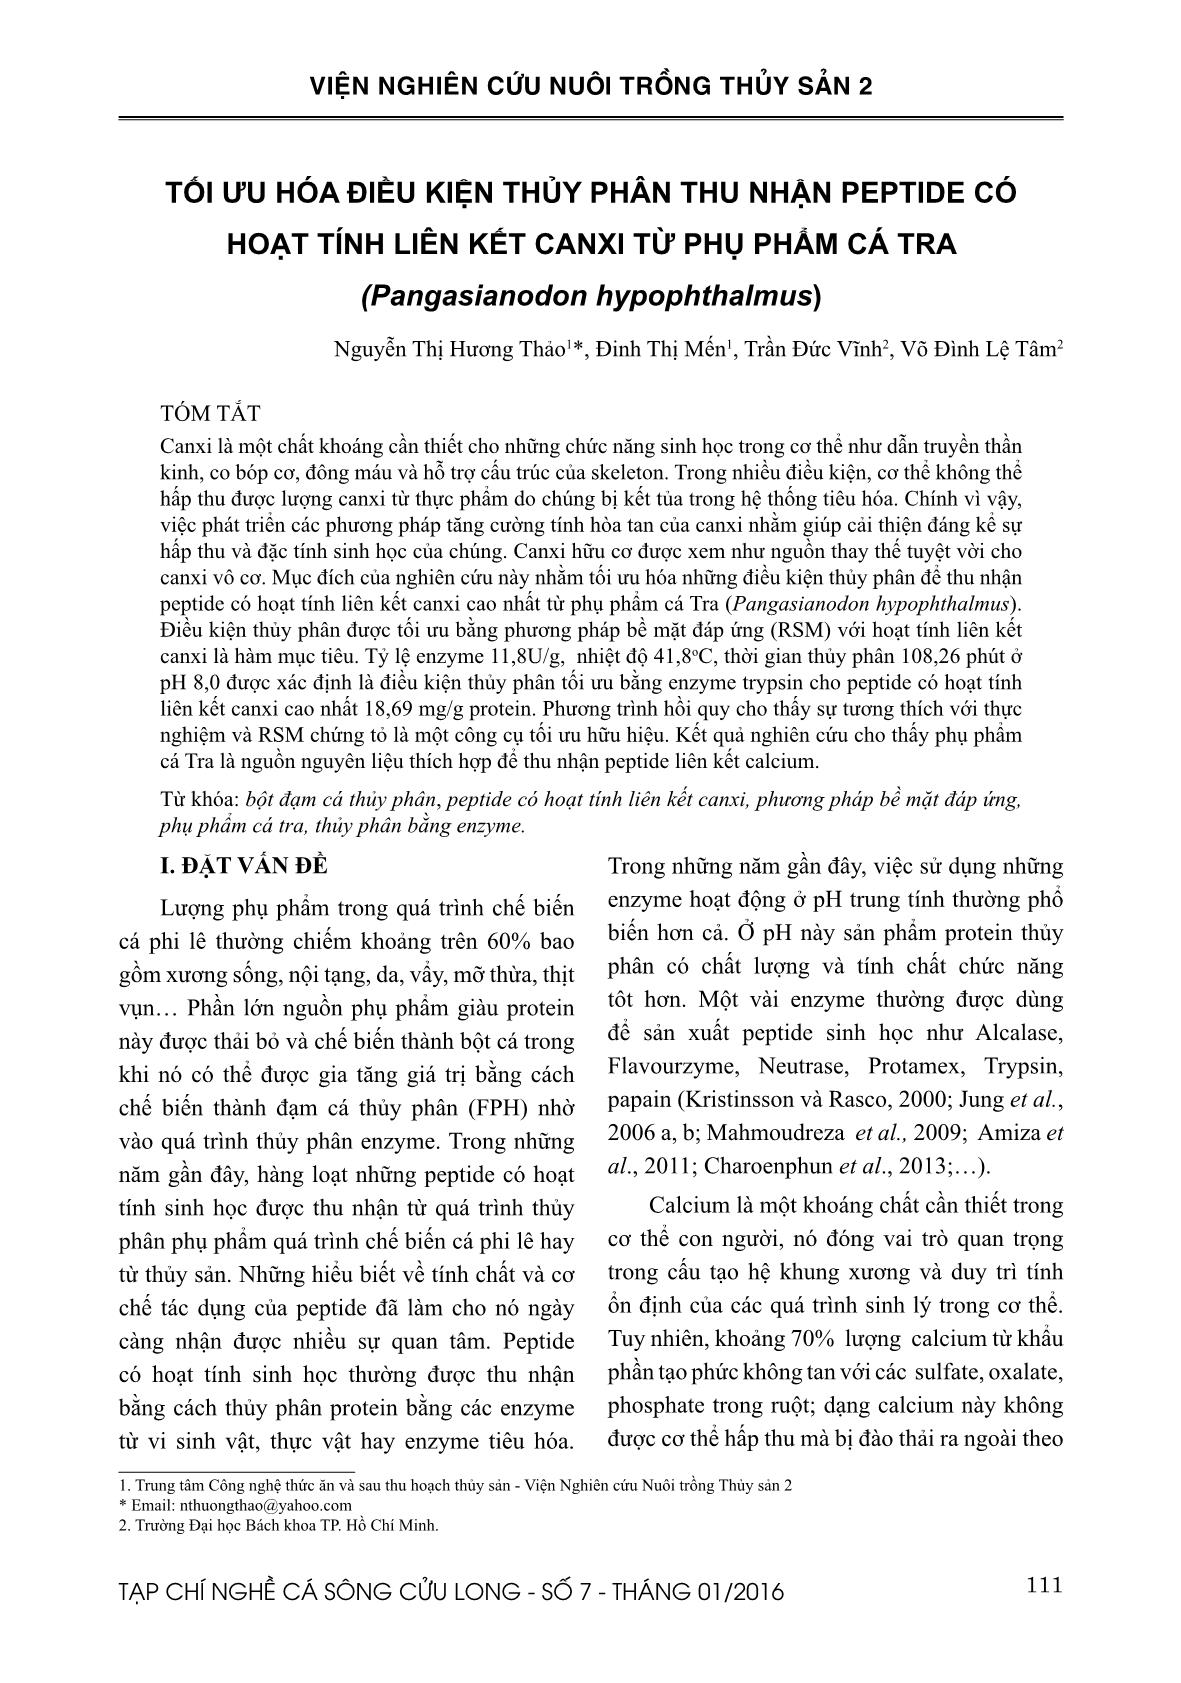 Tối ưu hóa điều kiện thủy phân thu nhận peptide có hoạt tính liên kết canxi từ phụ phẩm cá tra (Pangasianodon hypophthalmus) trang 1